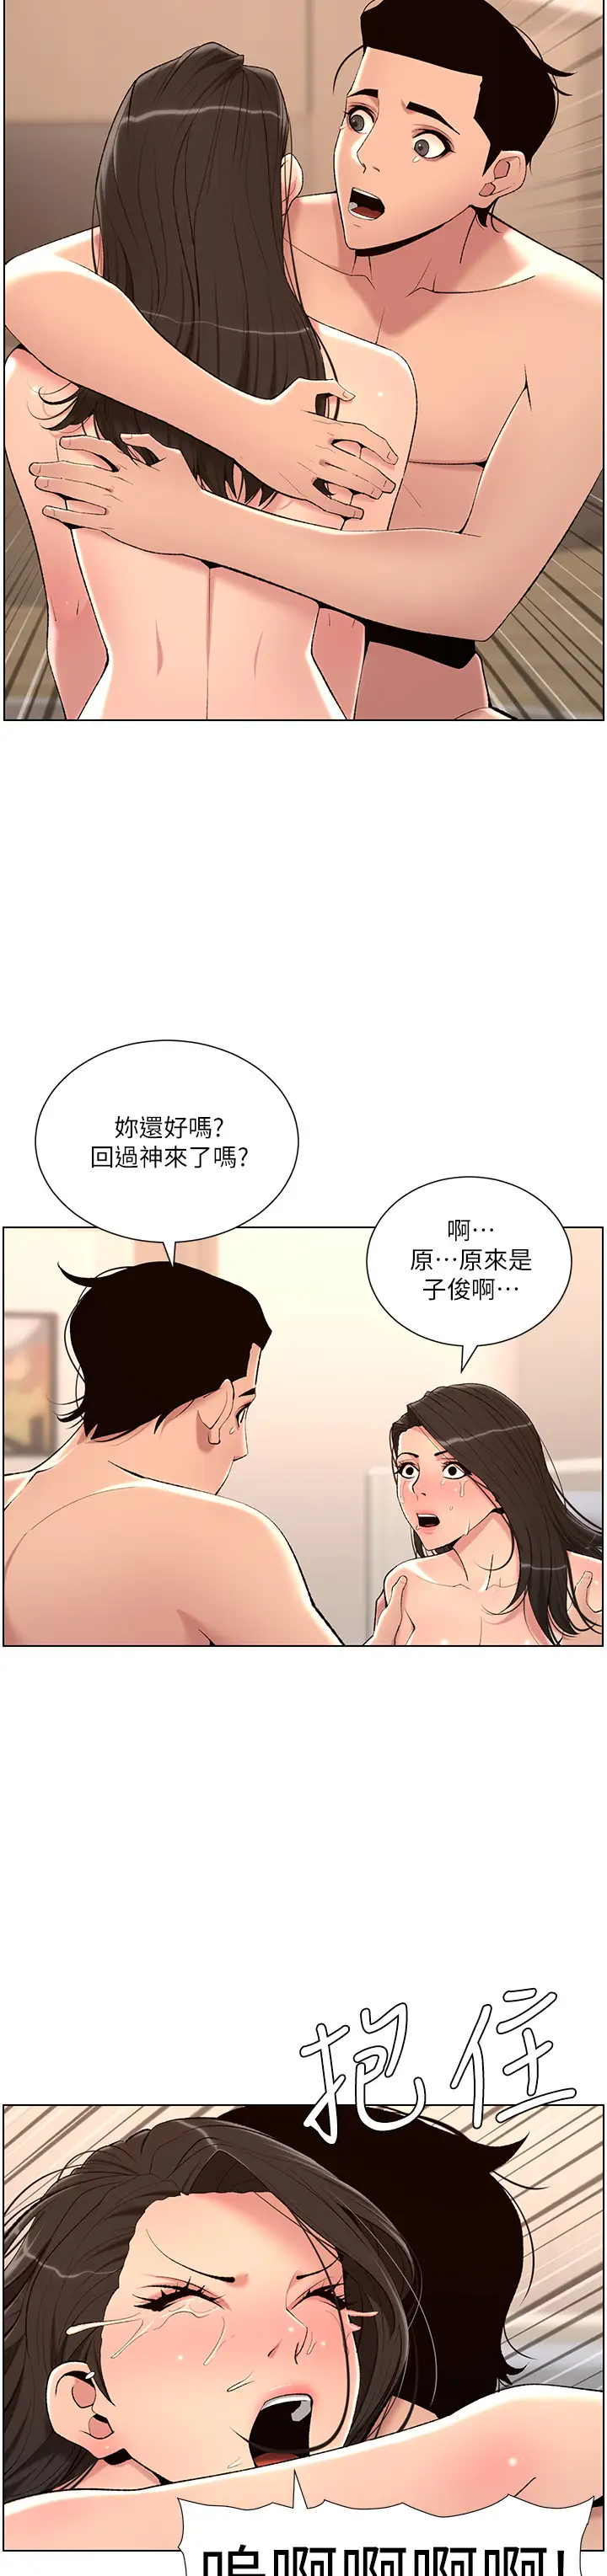 韩国污漫画 帝王App 第22话 不断刷新纪录的高潮 28